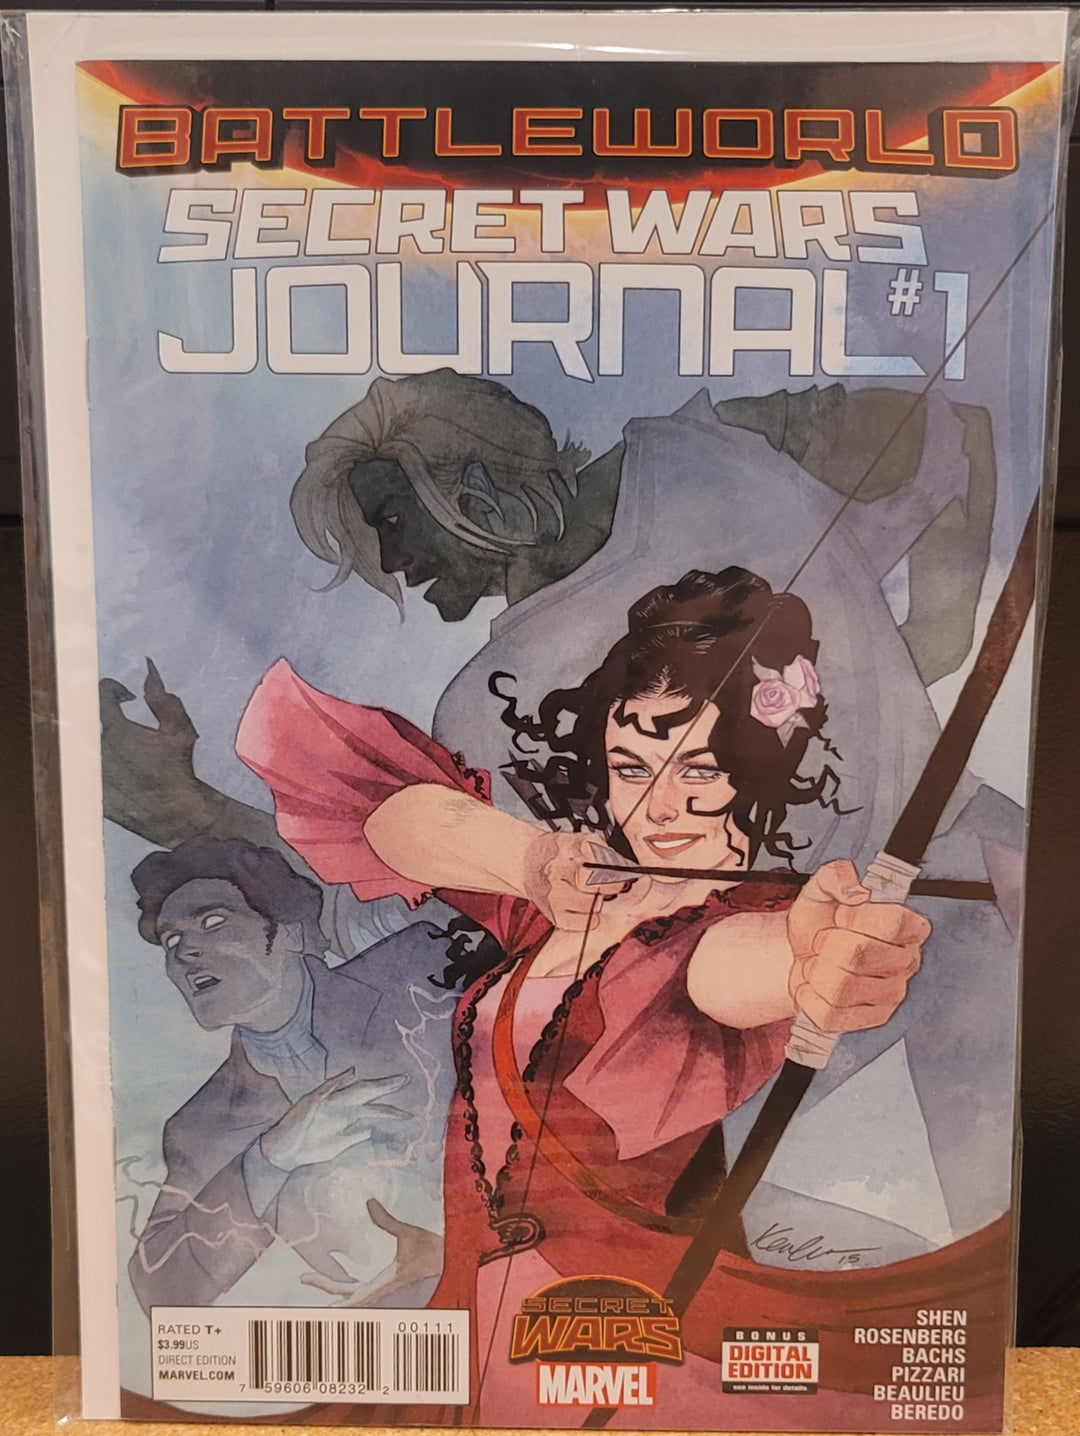 Battleworld Secret Wars Journal 第 1 期漫画书 Marvel Now